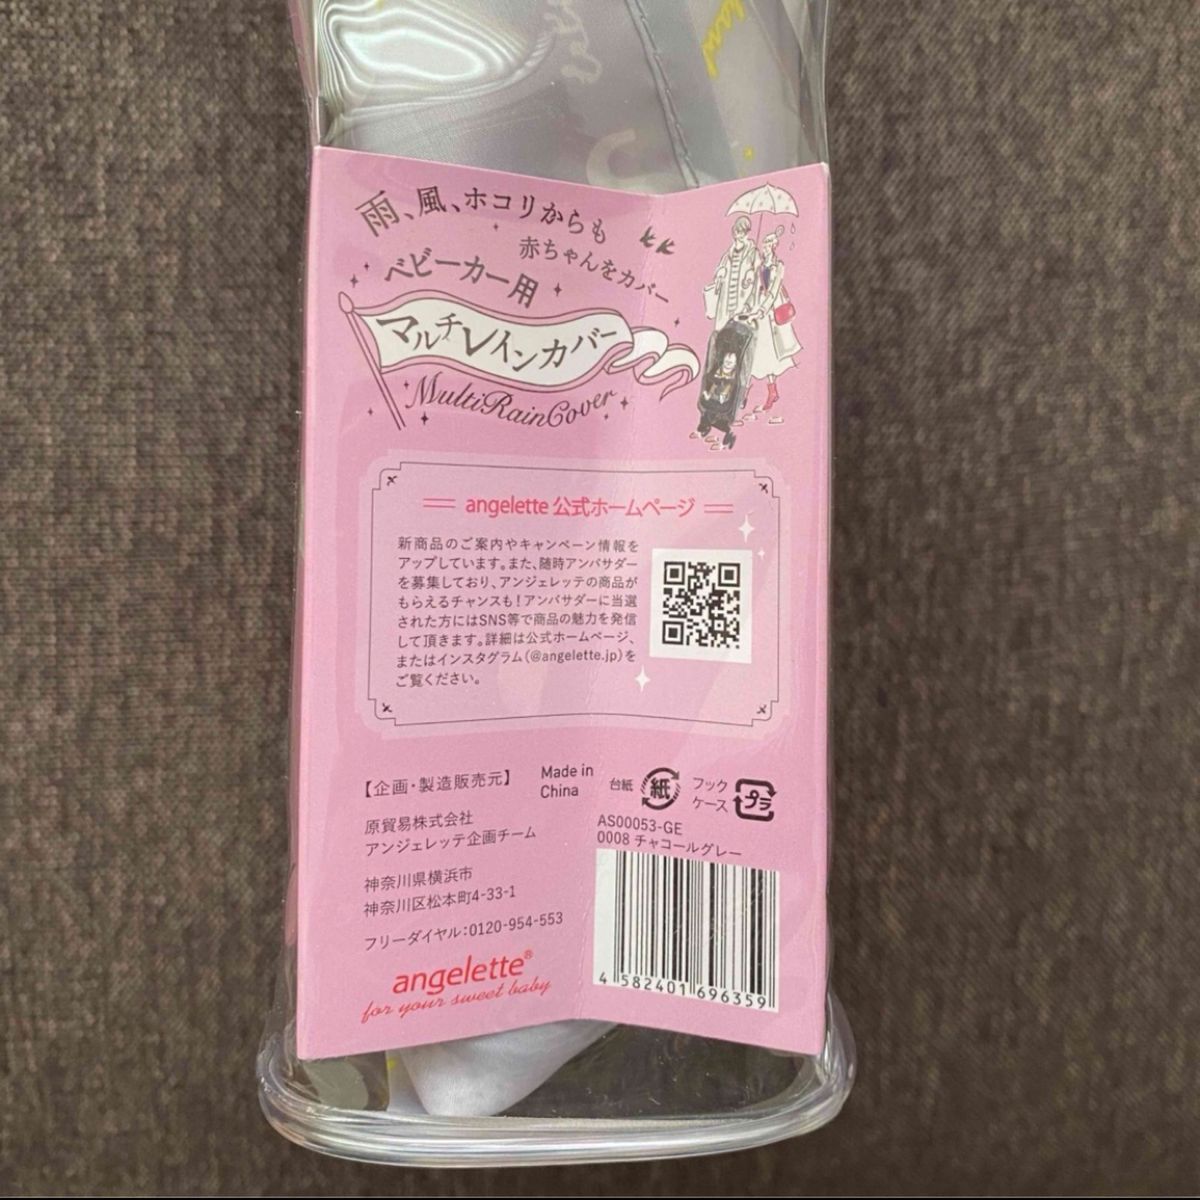 【新品未開封】angelette ベビーカー用マルチレインカバー